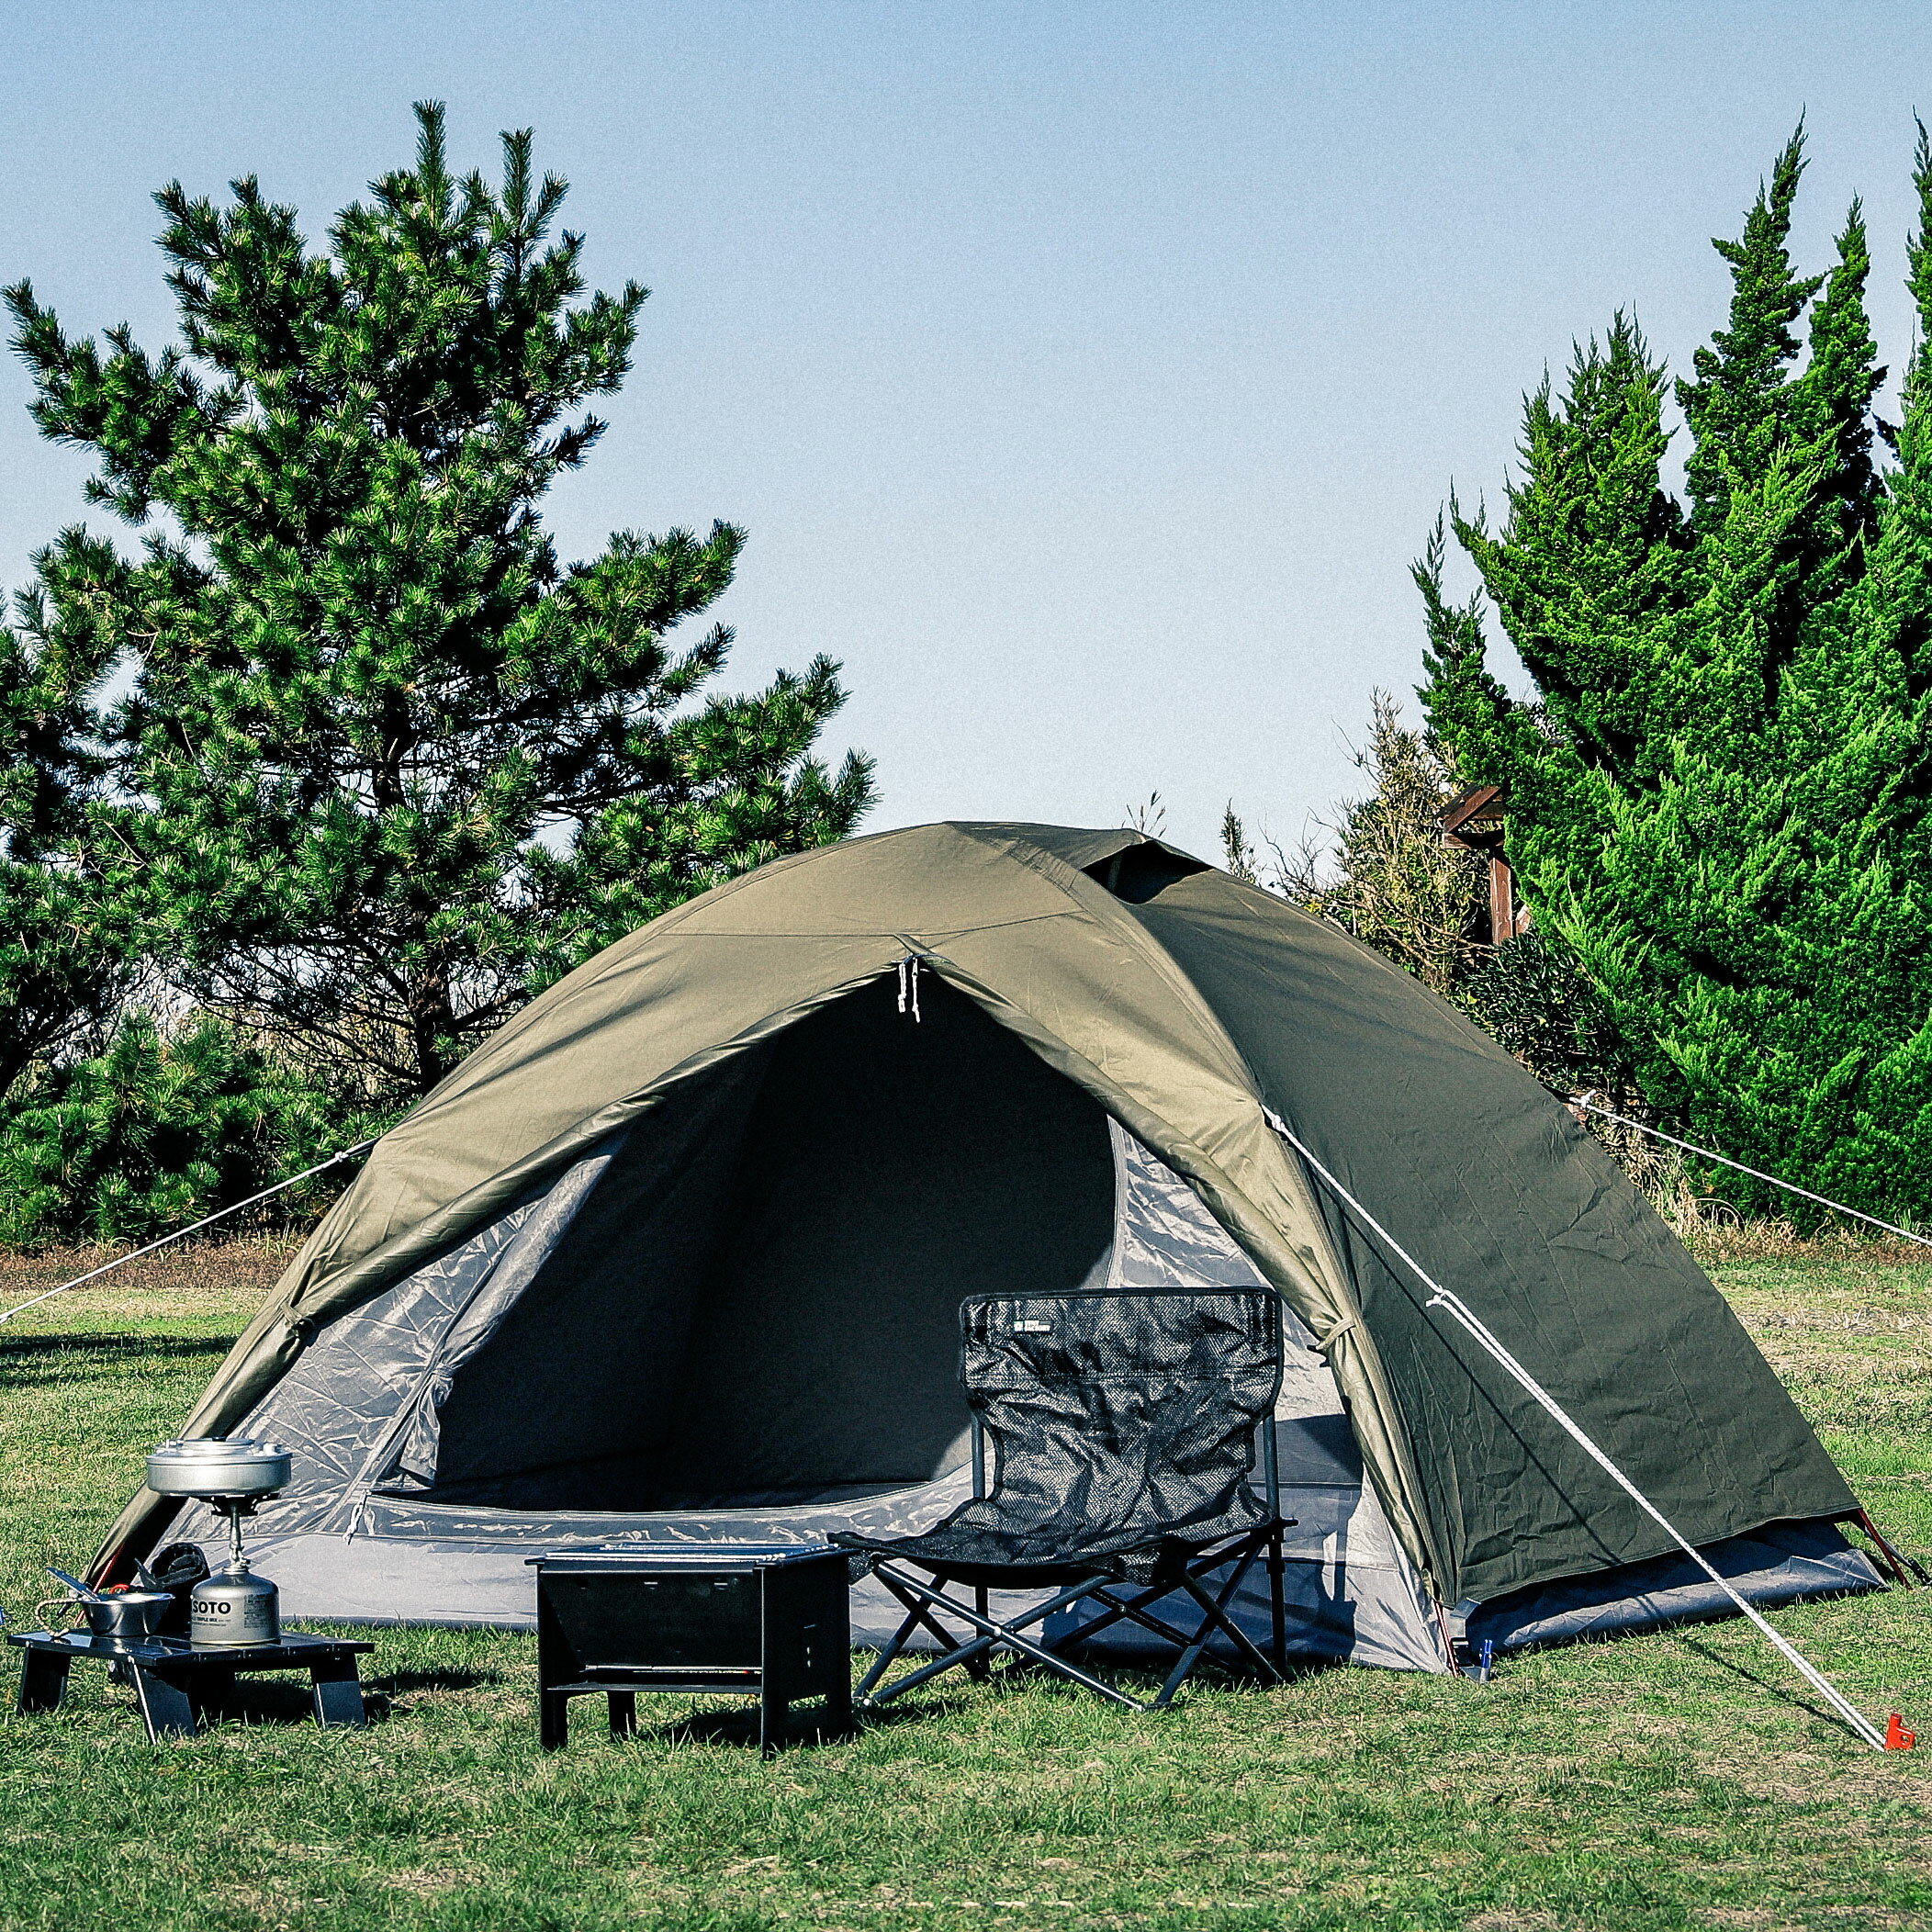 Hi-TCドームテント2 TENTFACTORY(テントファクトリー) TF-TCD2A キャンプ 簡単テント 日よけ サンシェード 耐水 UVカット 収納袋付 アウトドア バーベキュー ポイント ランキング 持ち物 プレゼント 2色展開 父の日